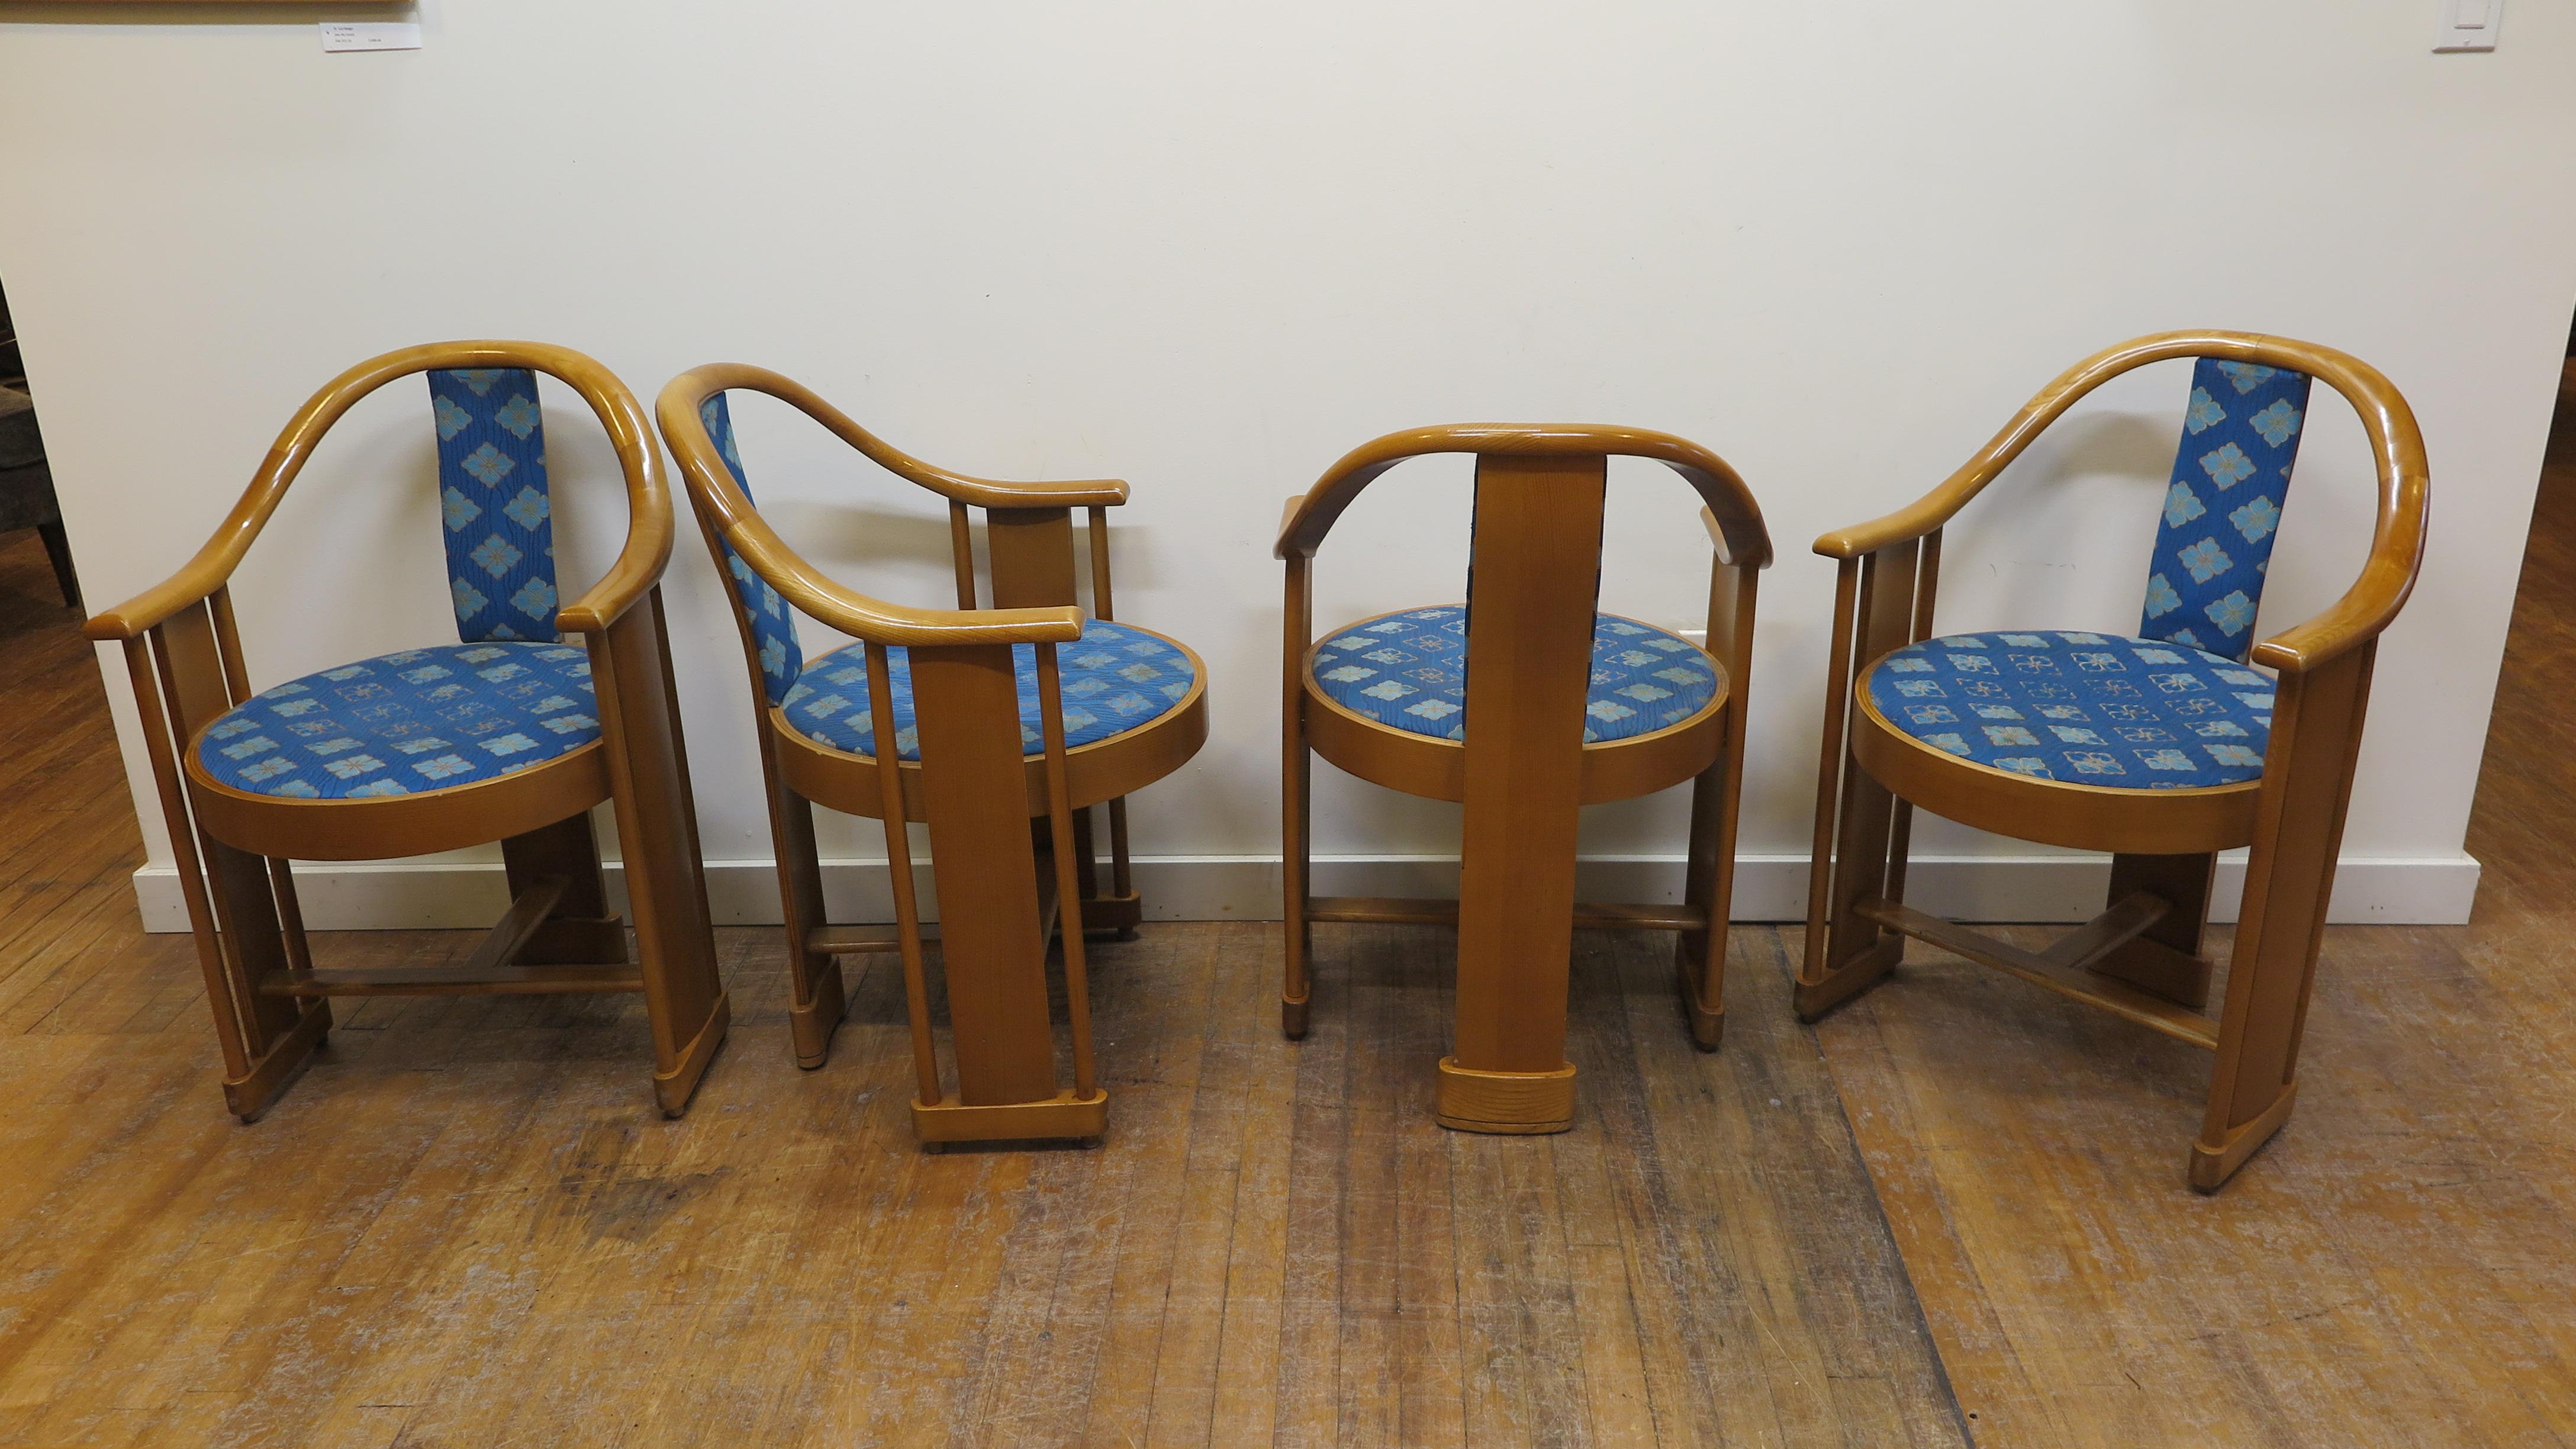 Satz von vier Bugholzstühlen mit runder Rückenlehne von Colber & Trocadero, Italien, im Stil des Deco.
Colber & Trocadero, Hersteller von hochwertigen Möbeln, wurde 1979 zu Colber of Italy. Stühle sind in gutem Zustand einige Dellen auf dem Holz